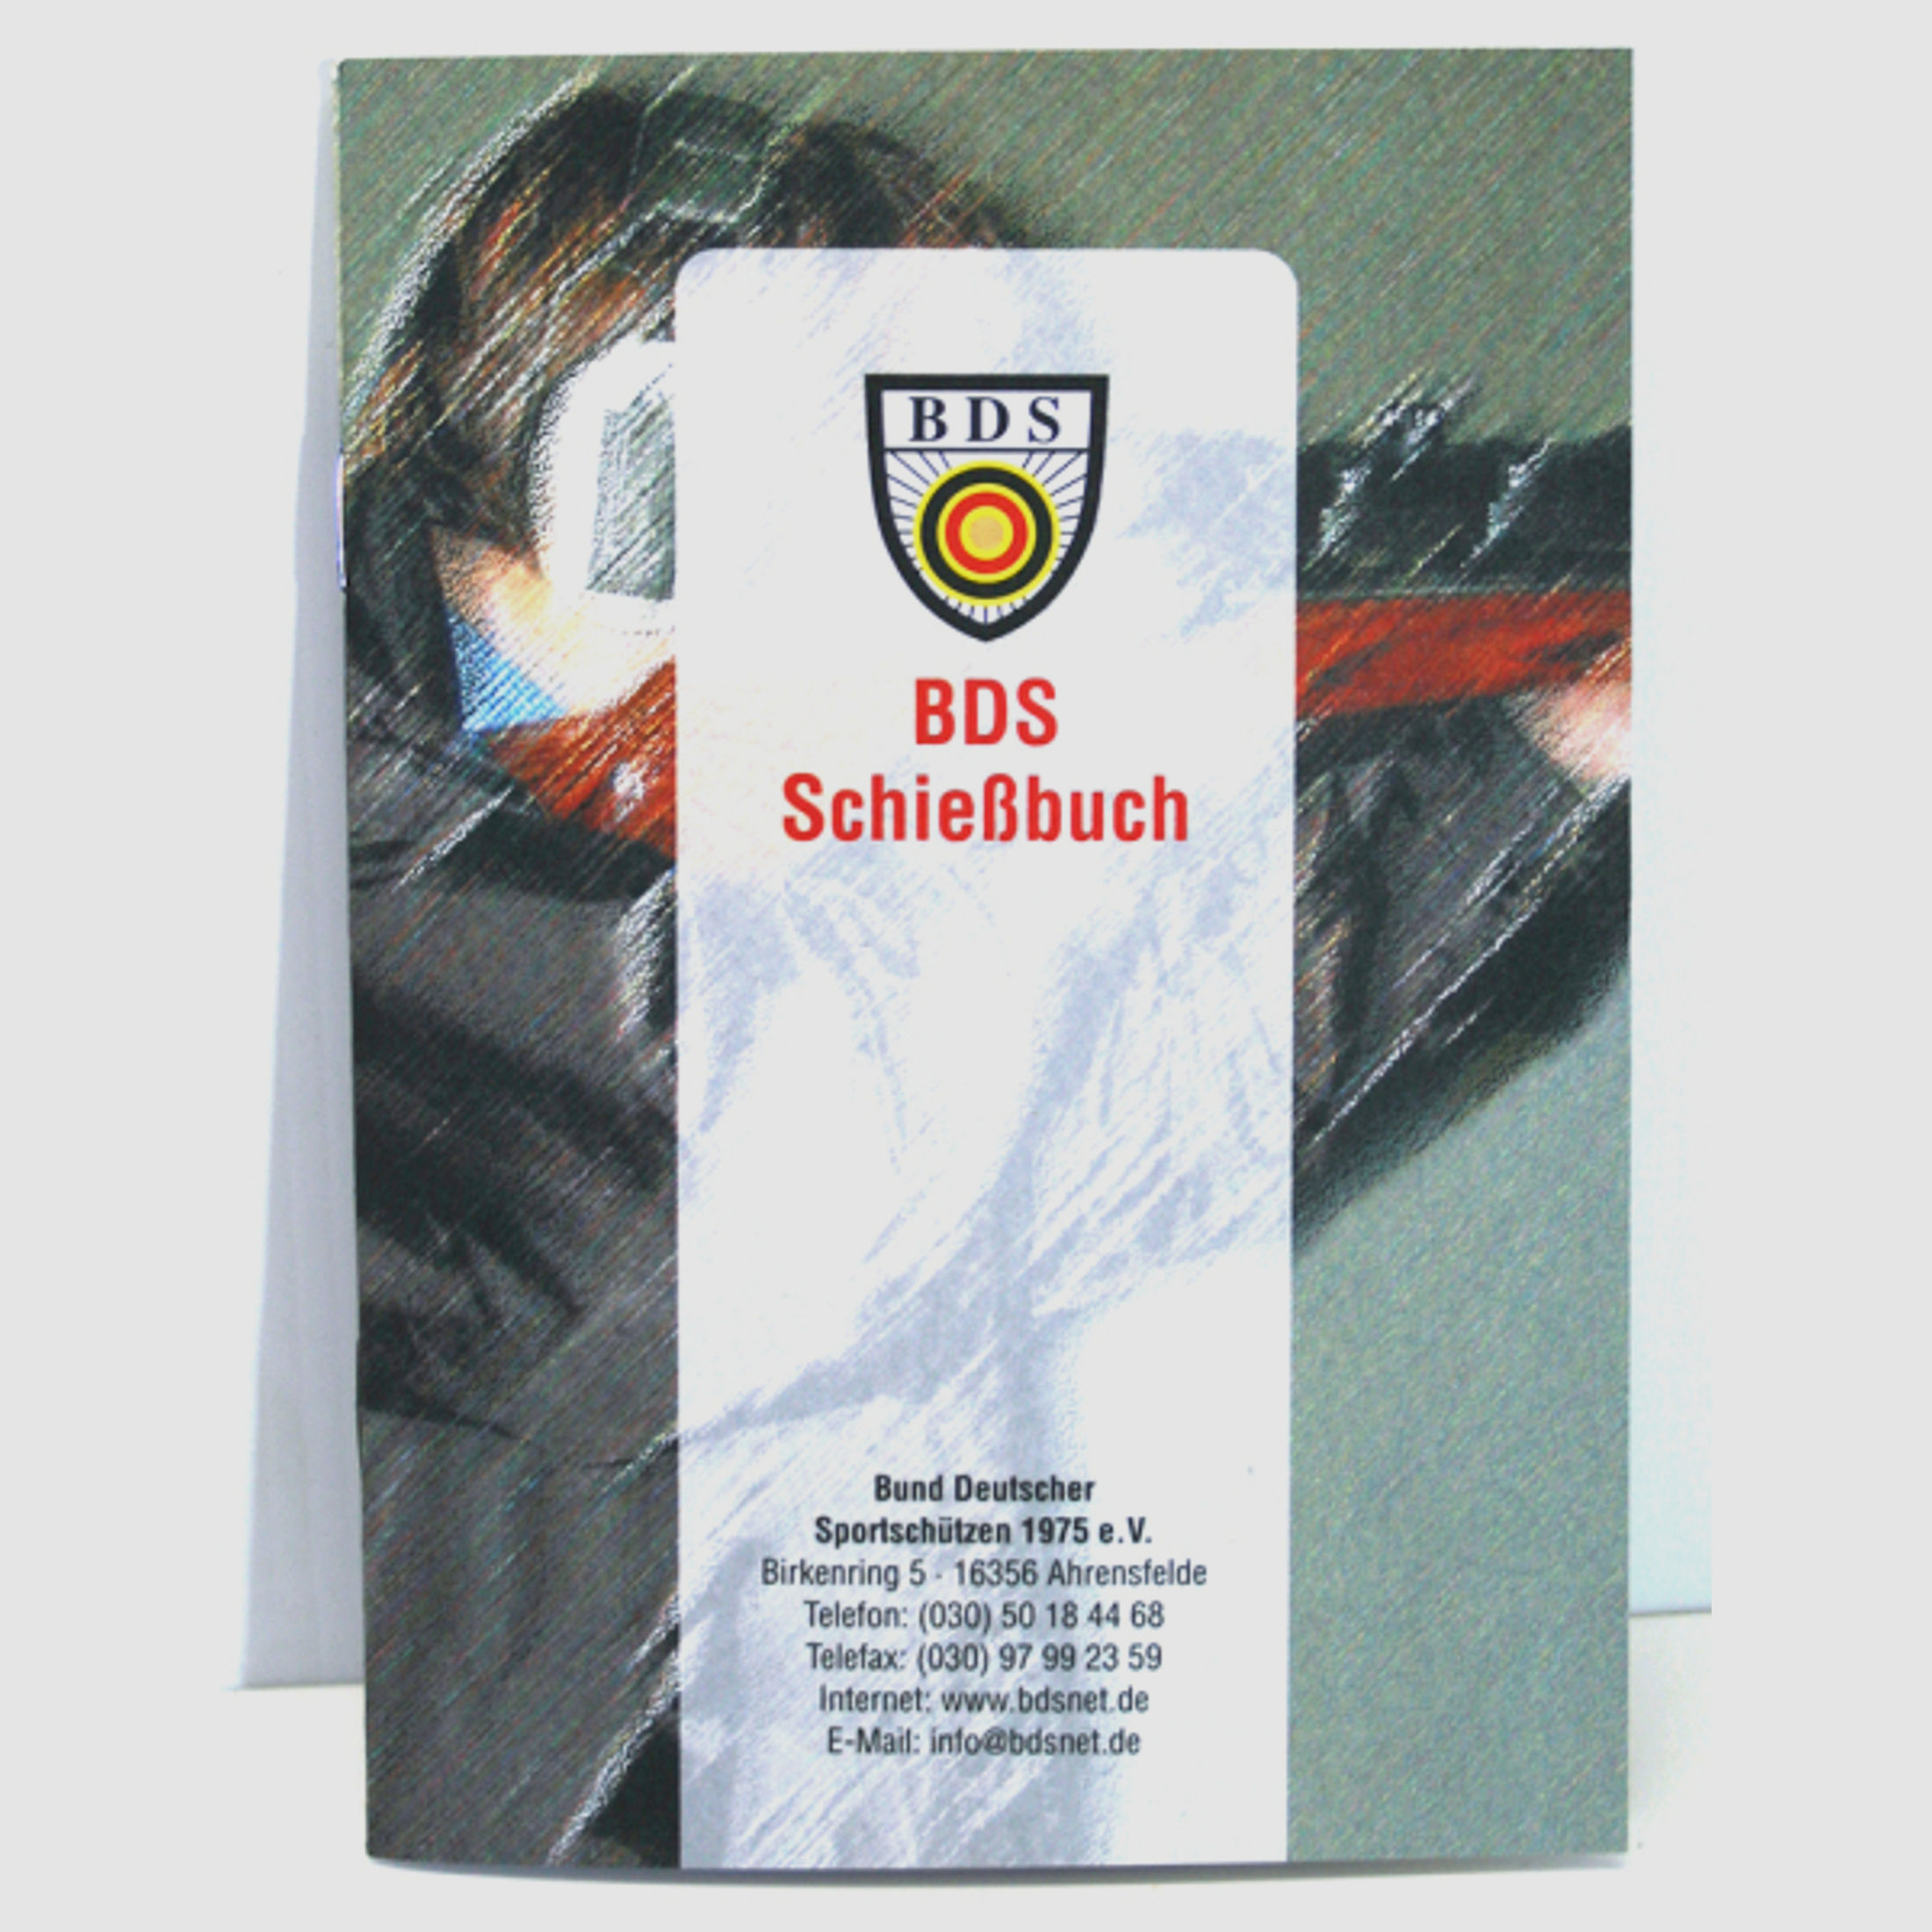 1 x Schießbuch Schießnachweisheft für Behörden oder Verband Bedürfnisnachweis 32 Seiten BDS 105x148